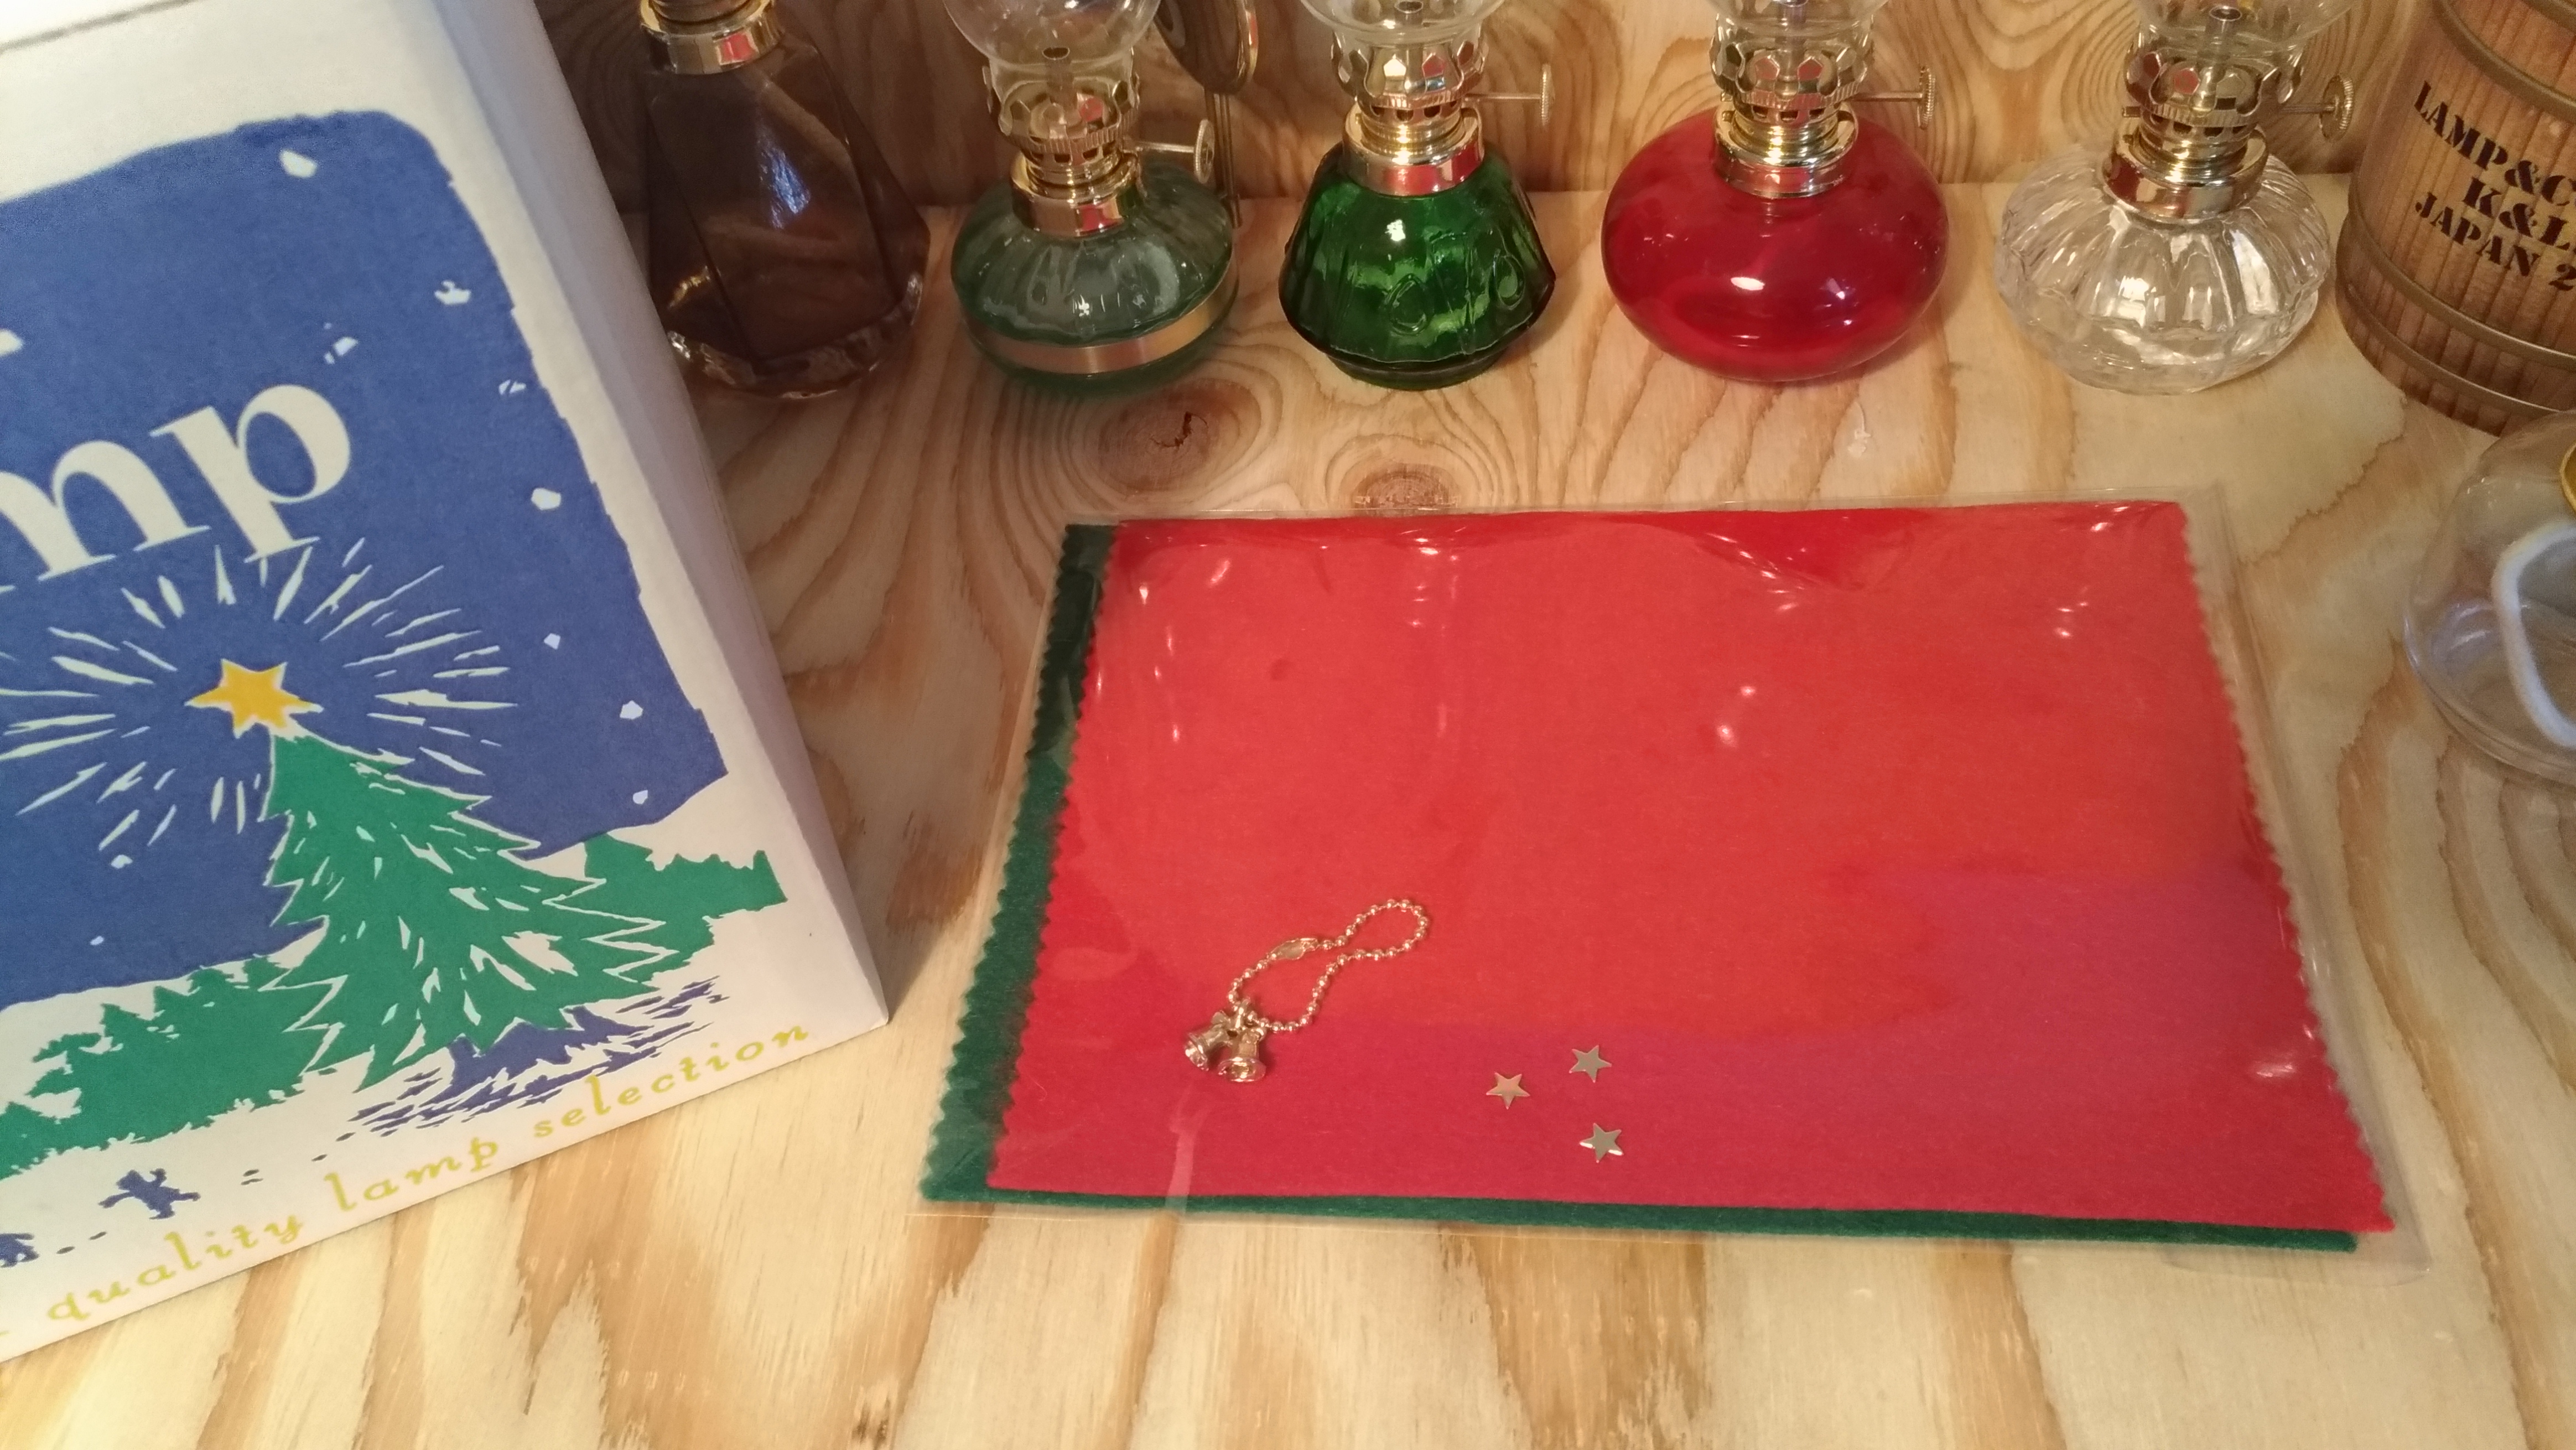  クリスマス テーブル・オイルランプ/ツリー型ランプ(大)(小)+オイルセット/ムラエルナックス/無料プレゼント付き画像